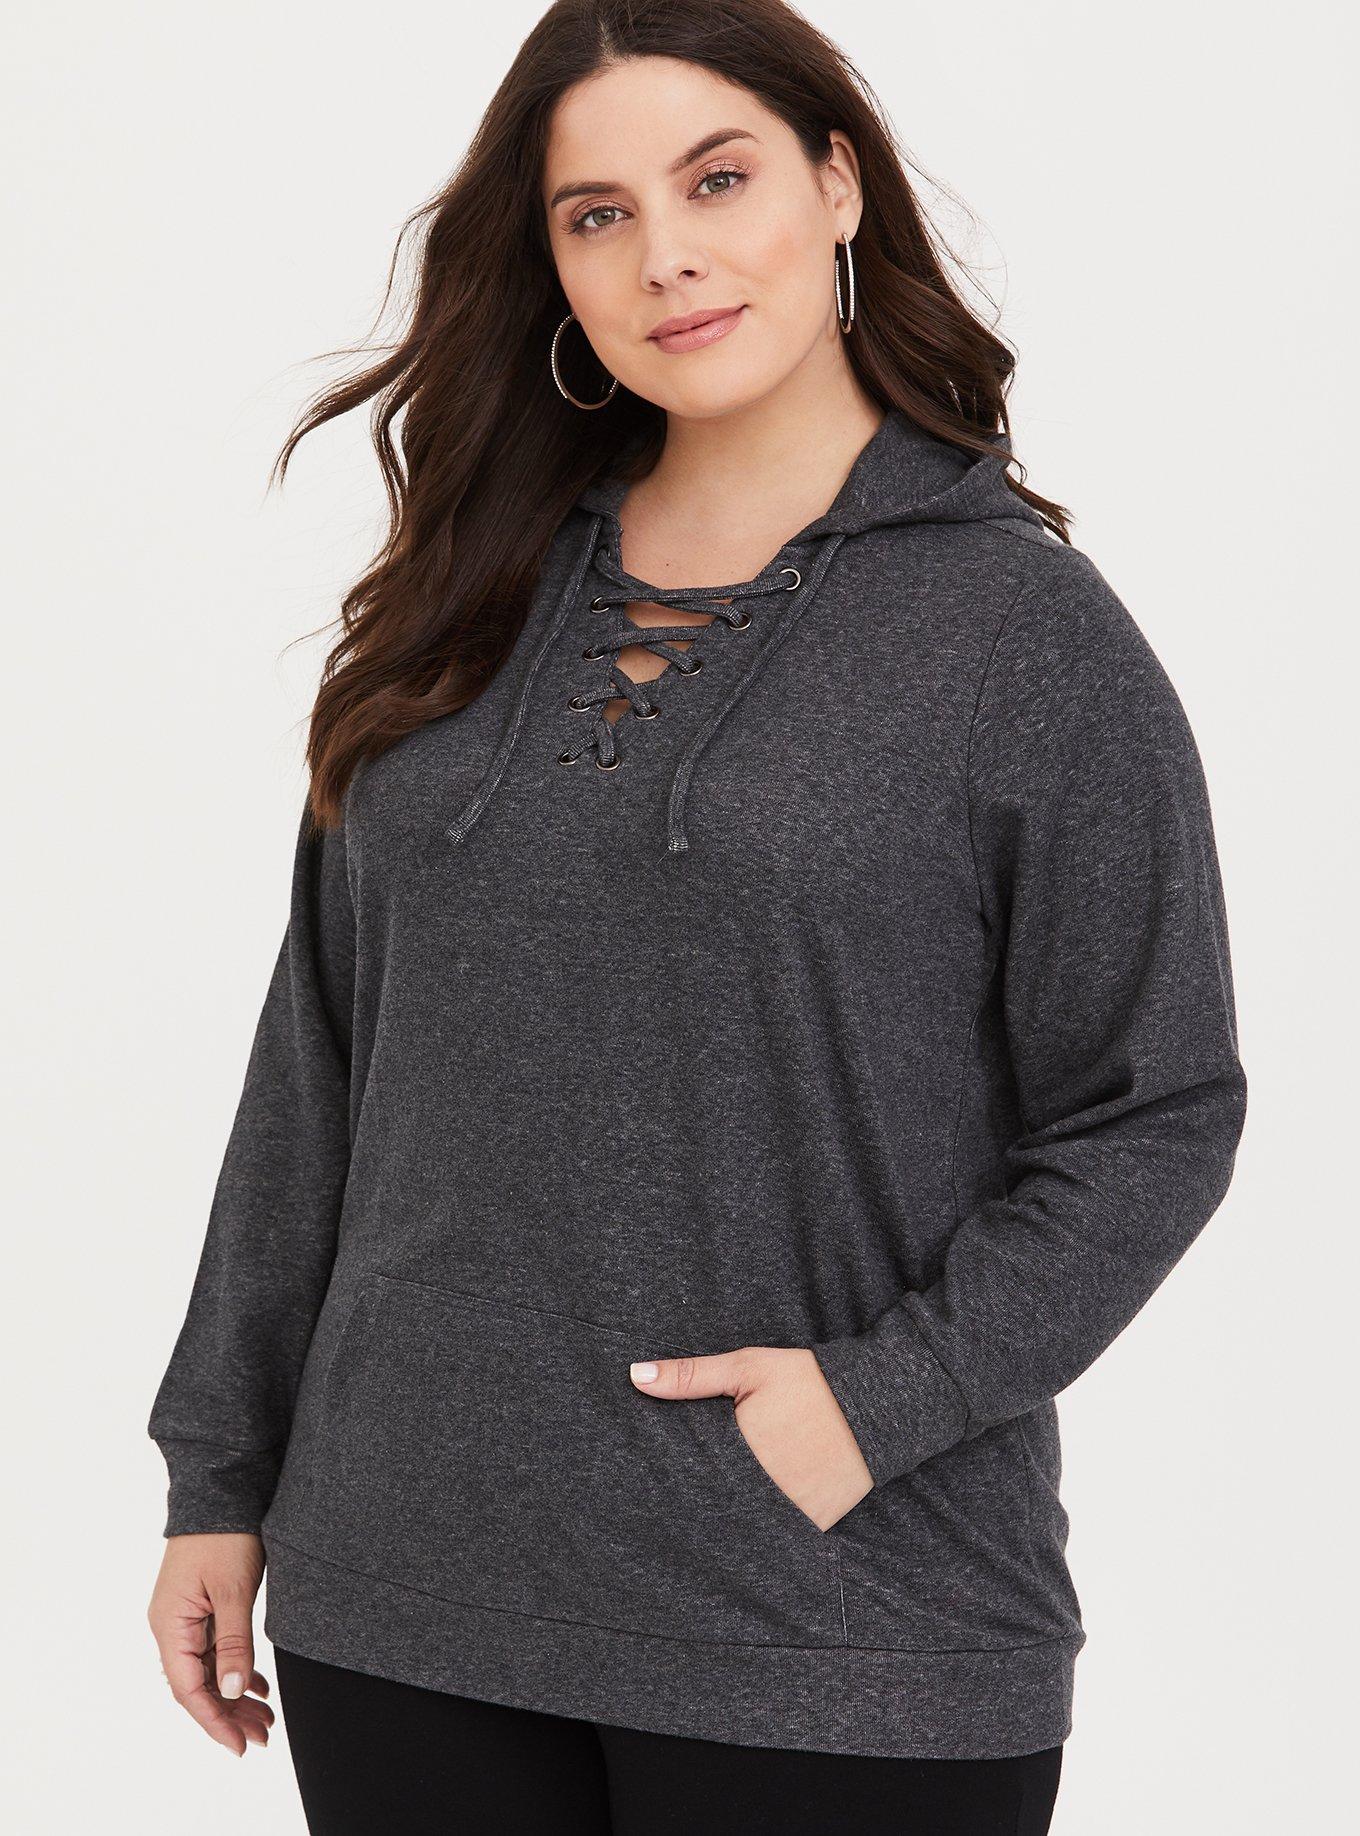 Plus Size - Grey Crisscross Hooded Sweater - Torrid